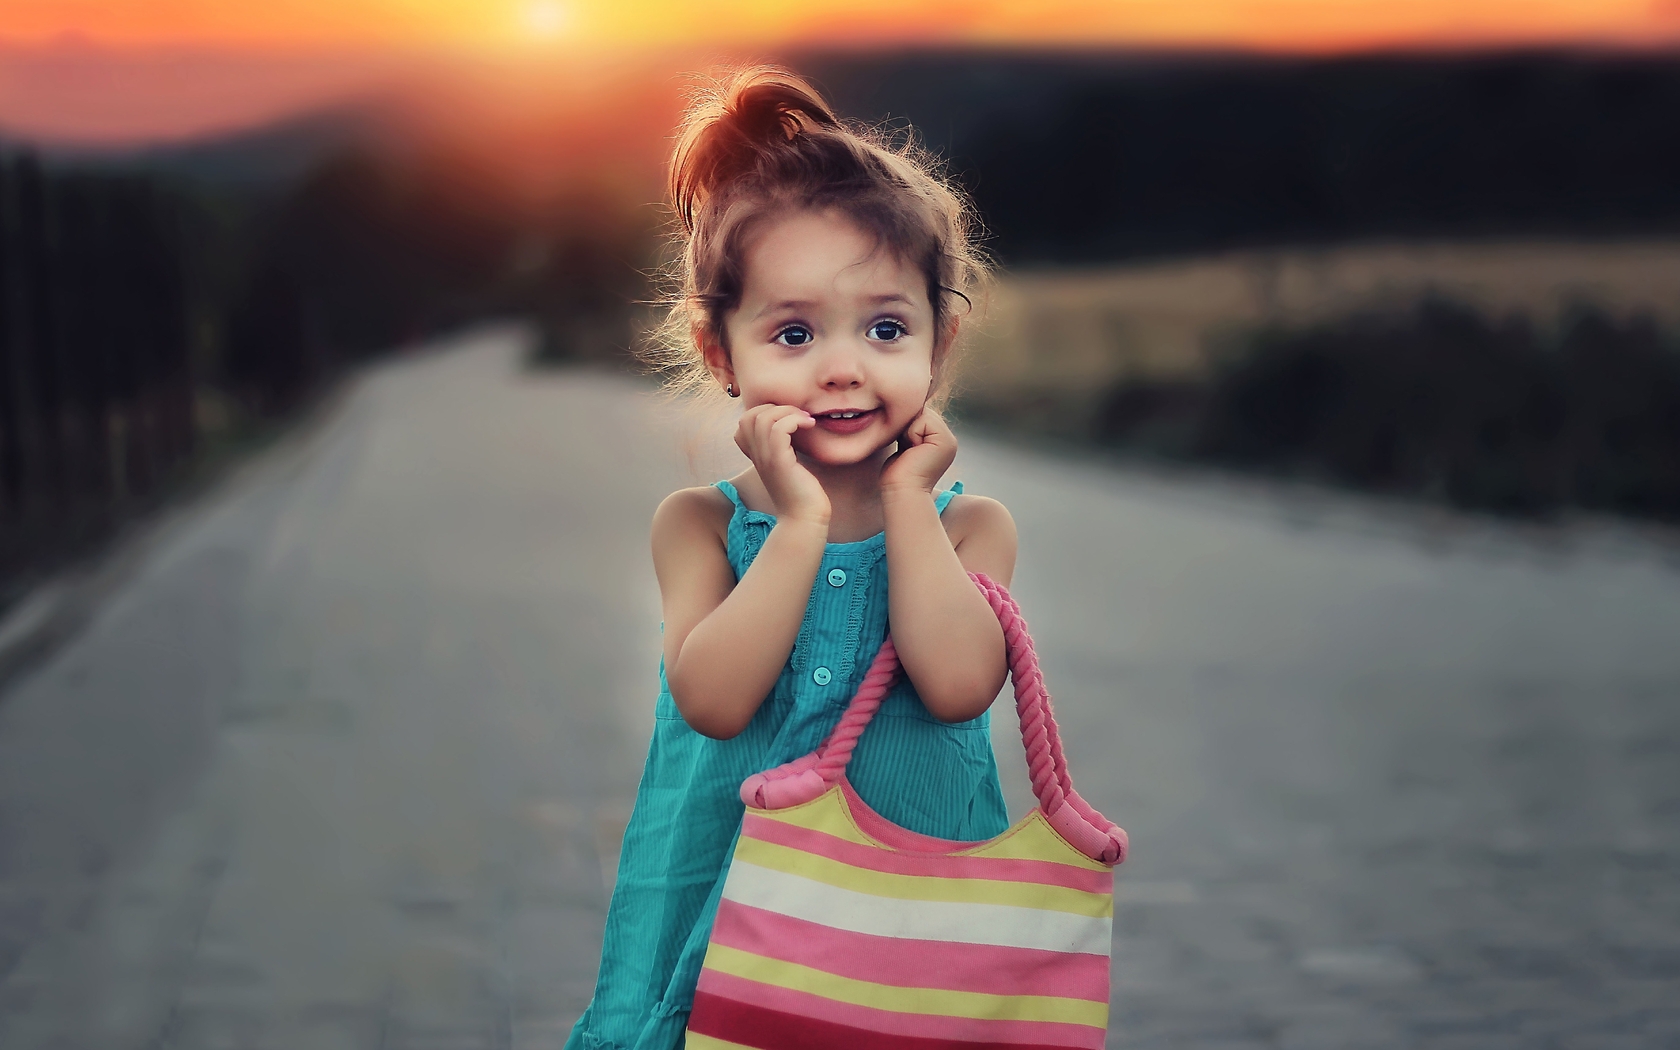 Image: Girl, bag, background, blur, sunset, road, stripes